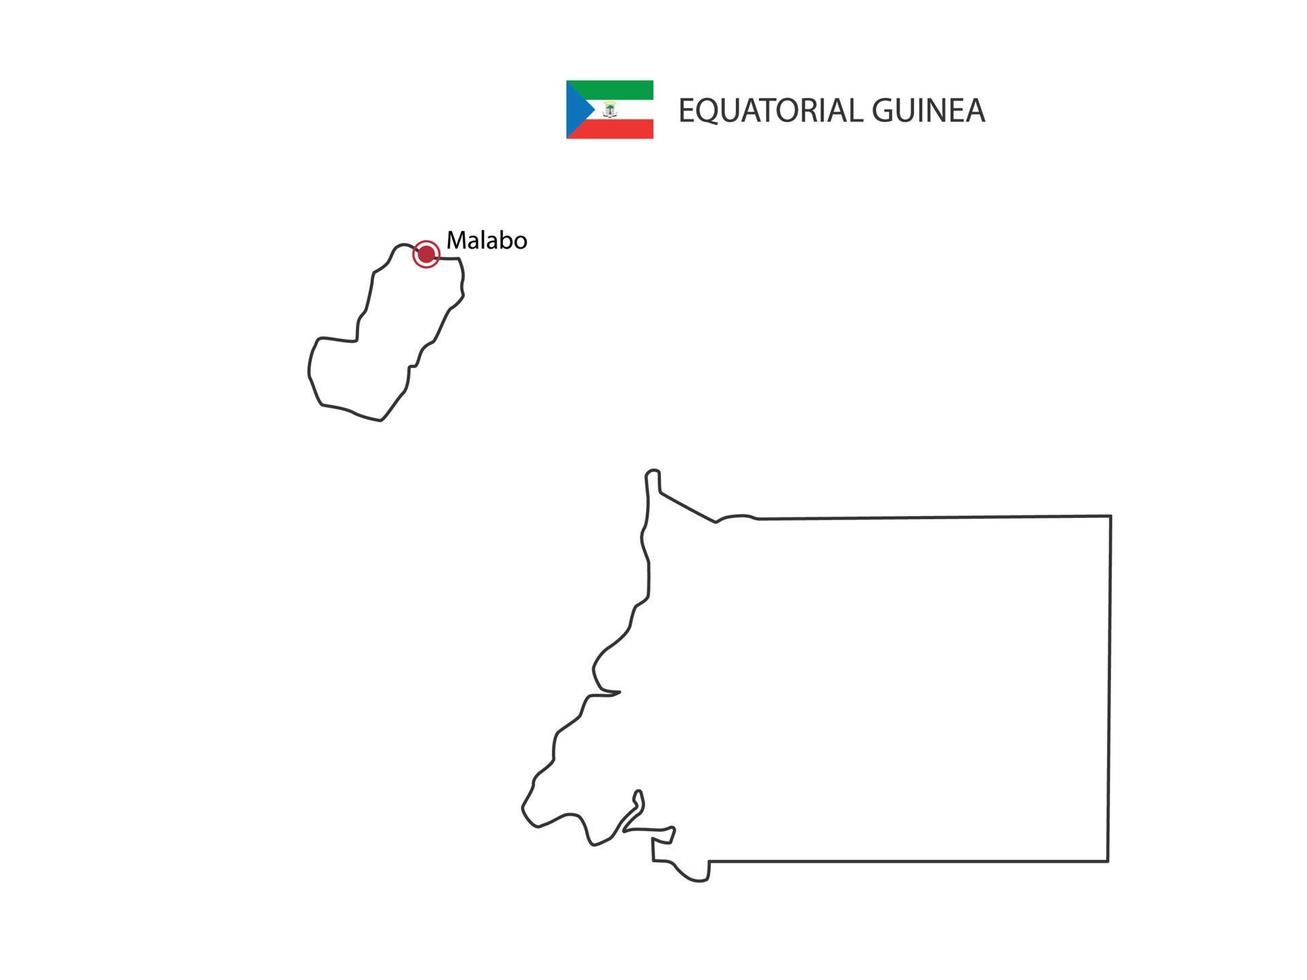 mano disegnare magro nero linea vettore di equatoriale Guinea carta geografica con capitale città malabo su bianca sfondo.